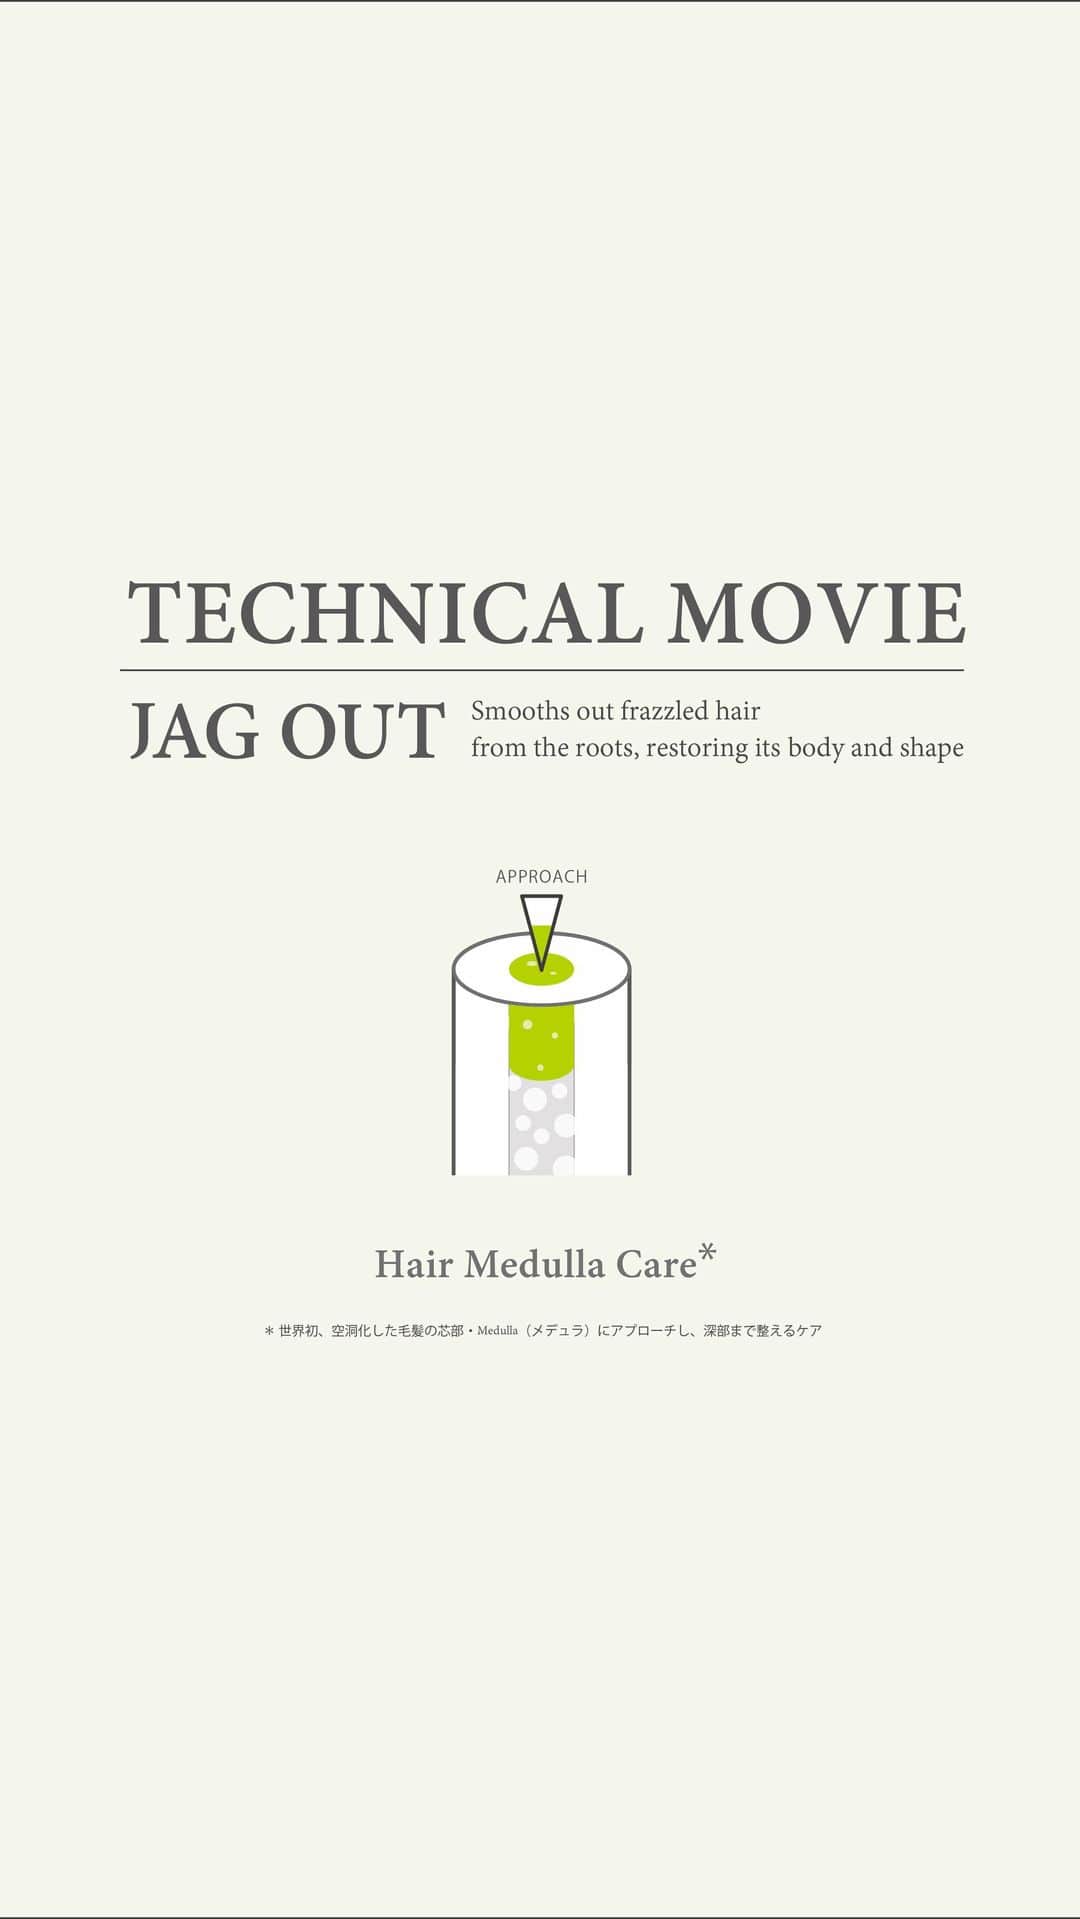 ピトレティカ/タカラベルモントのインスタグラム：「- information -  pittoetiqua JAG OUT technical movie  viemoからもダウンロード・視聴・シェアが可能です。 https://vimeo.com/524107492   「 Hair Medulla Care* 」 メデュラに対して特定のエフェクター成分（毛髪補修成分）とキャリア成分（浸透促進成分）を作用させると毛髪が芯から満たされ、見た目まで美しくすることができる、という現象を掴んだことから、「Hair Medulla Care」技術が誕生しました。   ※世界初、空洞化した毛髪の芯部・Medulla（メデュラ）にアプローチし、深部まで整えるケア  その他、ジャグアウトについても分かりやすくご紹介しております。是非、お見逃しなく！  JAG OUT&PRの詳細はこちら▾ https://pittoretiqua.jp/topics/jagout.html 「ピトレティカ ジャグアウト 公式」で検索！  ---------------------------------- pittoretiqua VIVIFYING SERIES  ＜ HOME CARE ＞ ジャグアウト シャンプー ジャグアウト トリートメント  ＜ SALON CARE ＞ サロンケア0２ ジャグアウト サロンケア0３ ジャグアウト  ＜ ピトレティカトリートメントメニュー＞ カラー後たったの “ 20分 ” 濃密で快適なタイムレス サロンケア  ※施術をご希望の方は、各ピトレティカ取り扱いサロンまでお問い合わせください。  ― ヴァーベナとプチグレンの香り ― ギザギザ毛羽立つ言うことをきかない髪がなめされるイメージで、心身ともにほぐされるような香り ---------------------------------- シワ髪check sheet！ ☐ブローでスタイリングしている ☐髪が傷みやすくなった ☐汗をかきやすい ☐髪を乾かさずに寝ている ☐寝返りをうつことが多い ☐寝癖が付きやすい ---------------------------------- ピトレティカ公式HP https://pittoretiqua.jp/ ---------------------------------- JAG OUTイメージ動画 ▾ https://vimeo.com/524104946 JAG OUTテクニカル動画 ▾ https://vimeo.com/524107492 ----------------------------------  #pittoretiqua #ピトレティカ #ピトレティカ取り扱いサロン #ピトレティカテラピスト #ピトレティカサロンメニュー  #新商品 #jagout #ジャグアウト  #シワ髪  #サロン専売品 #美容師さんと繋がりたい #サロンモデル #サロンスタイル #ヘアスタイル #ツヤ髪 #ヘアサロン #美容室 #美容院 #美髪 #シャンプー #トリートメント #ヘアケア #最先端 #スパ #ハイパーリペア   #LebeL #ルベル #takarabelmont #タカラベルモント」